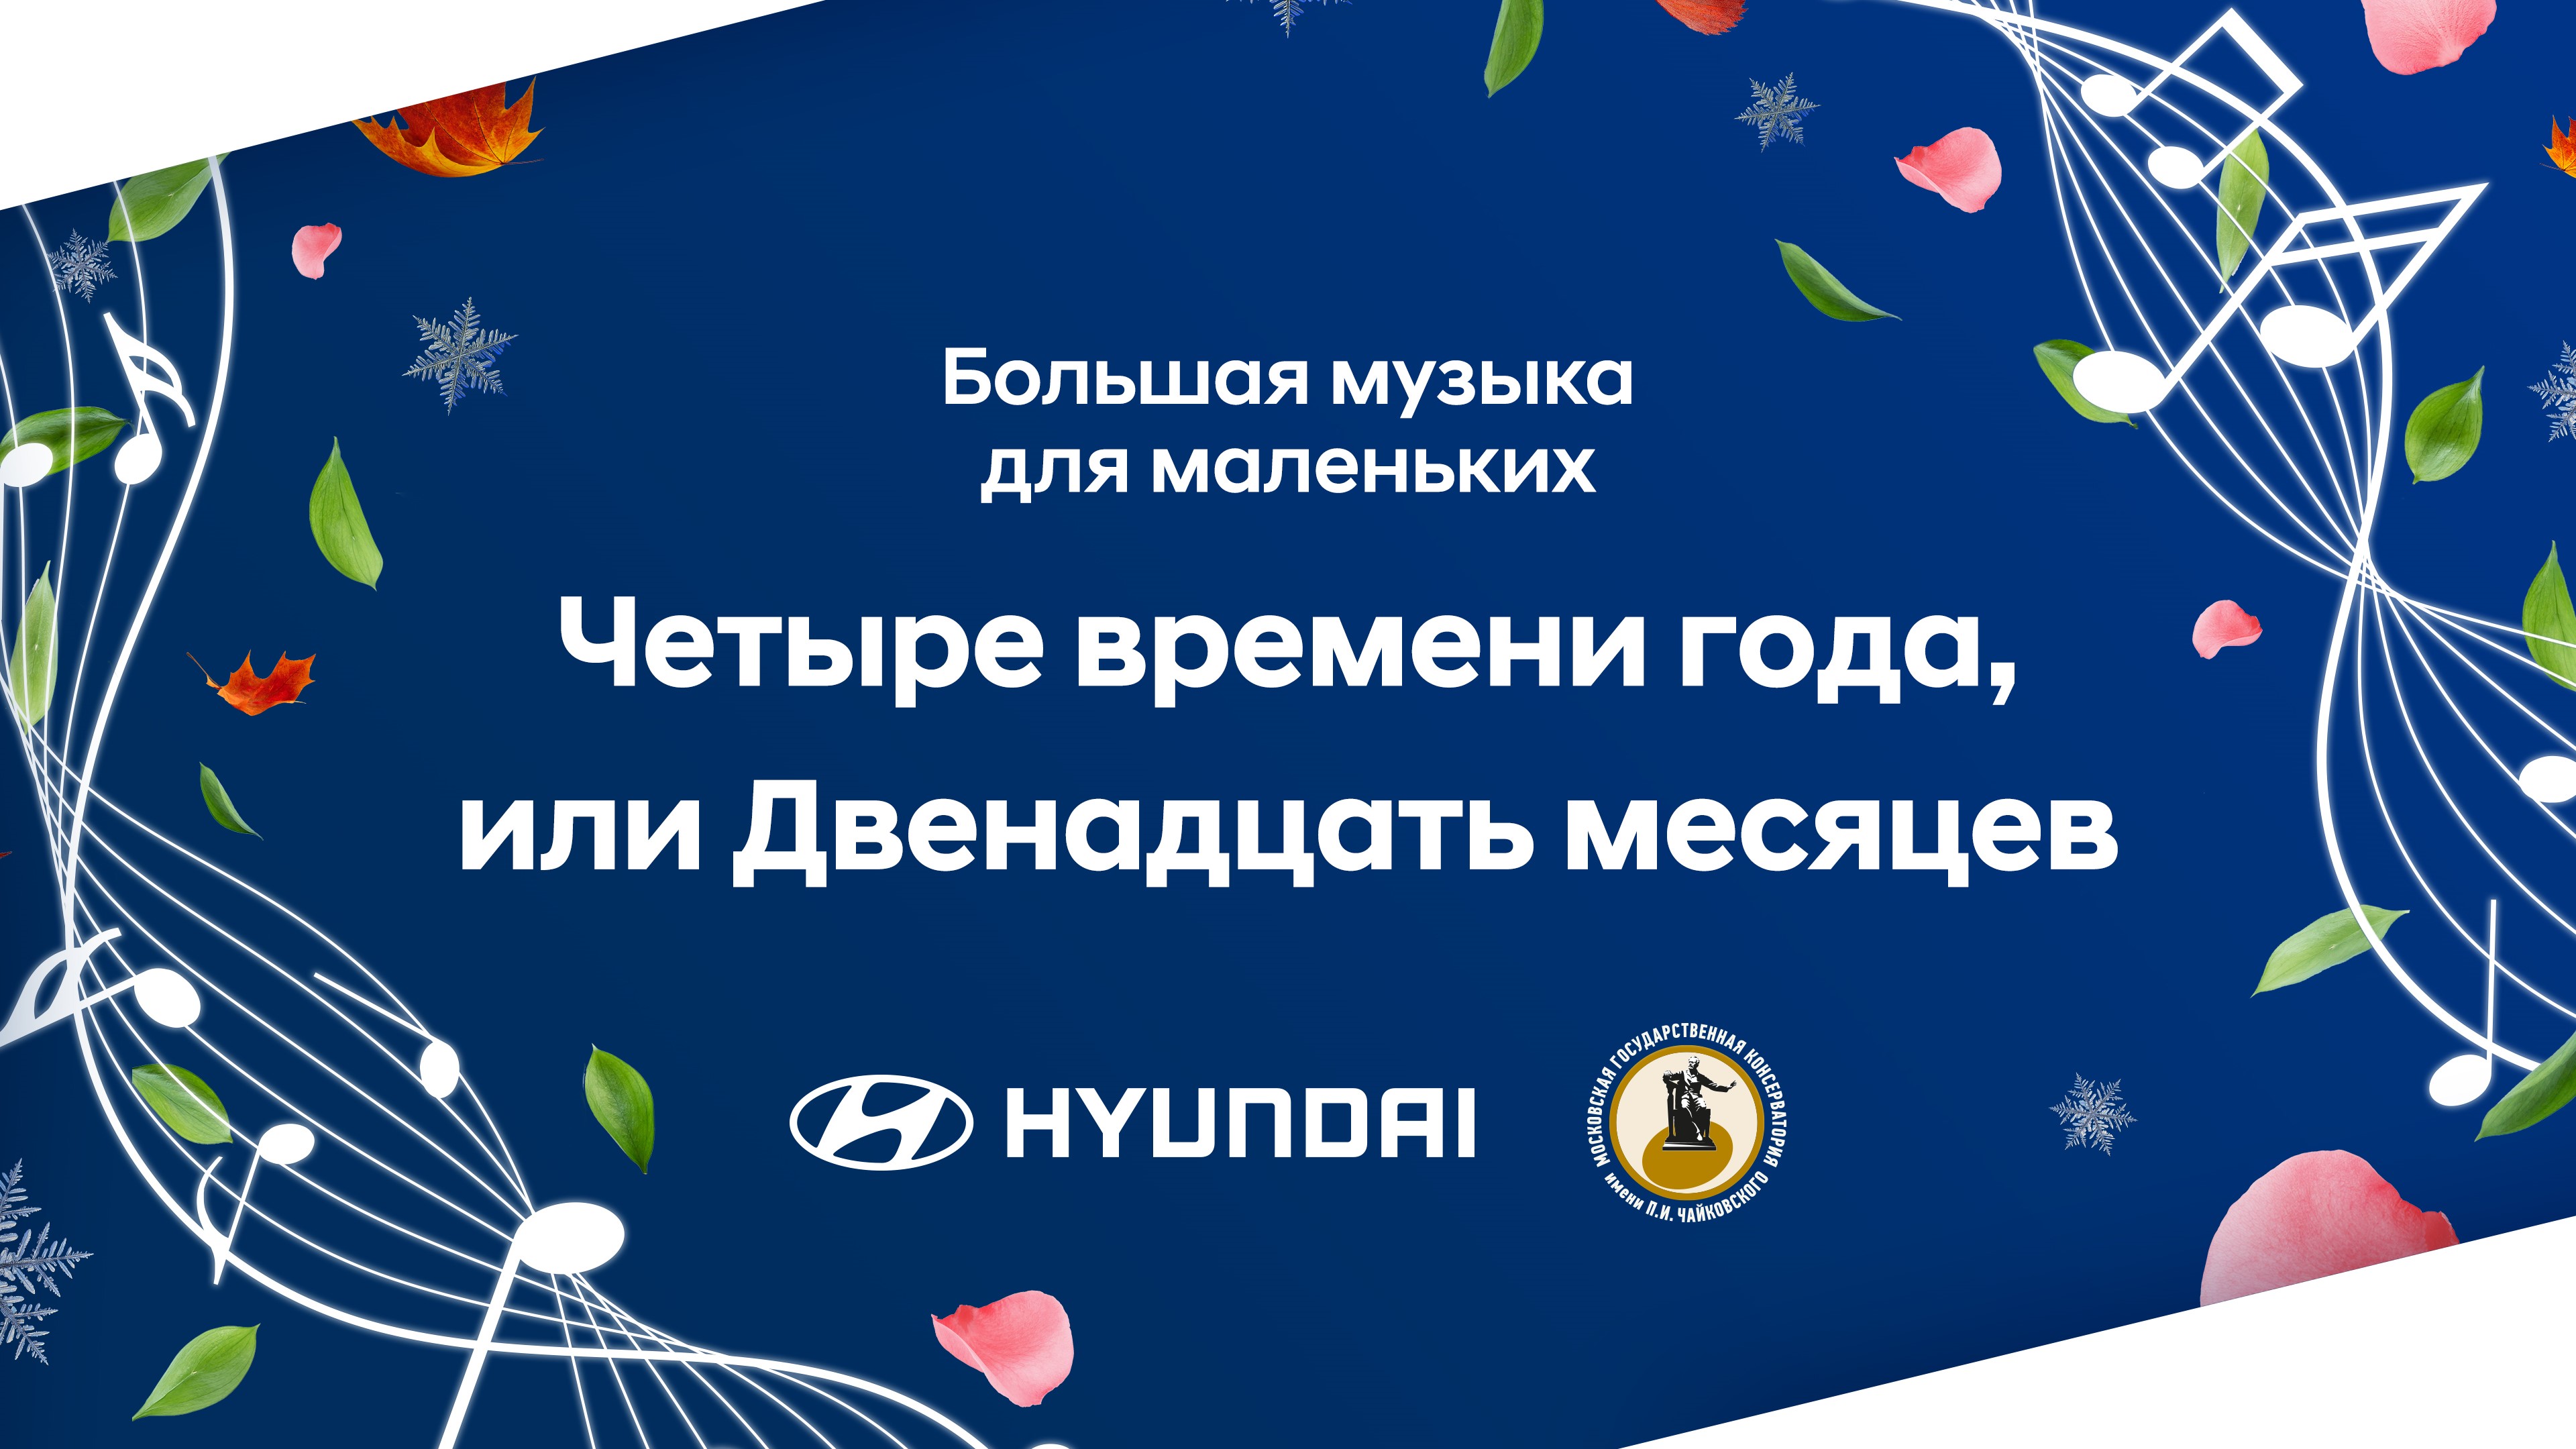 Hyundai и Московская консерватория приглашают на новый онлайн-концерт «Четыре времени года, или Двенадцать месяцев»